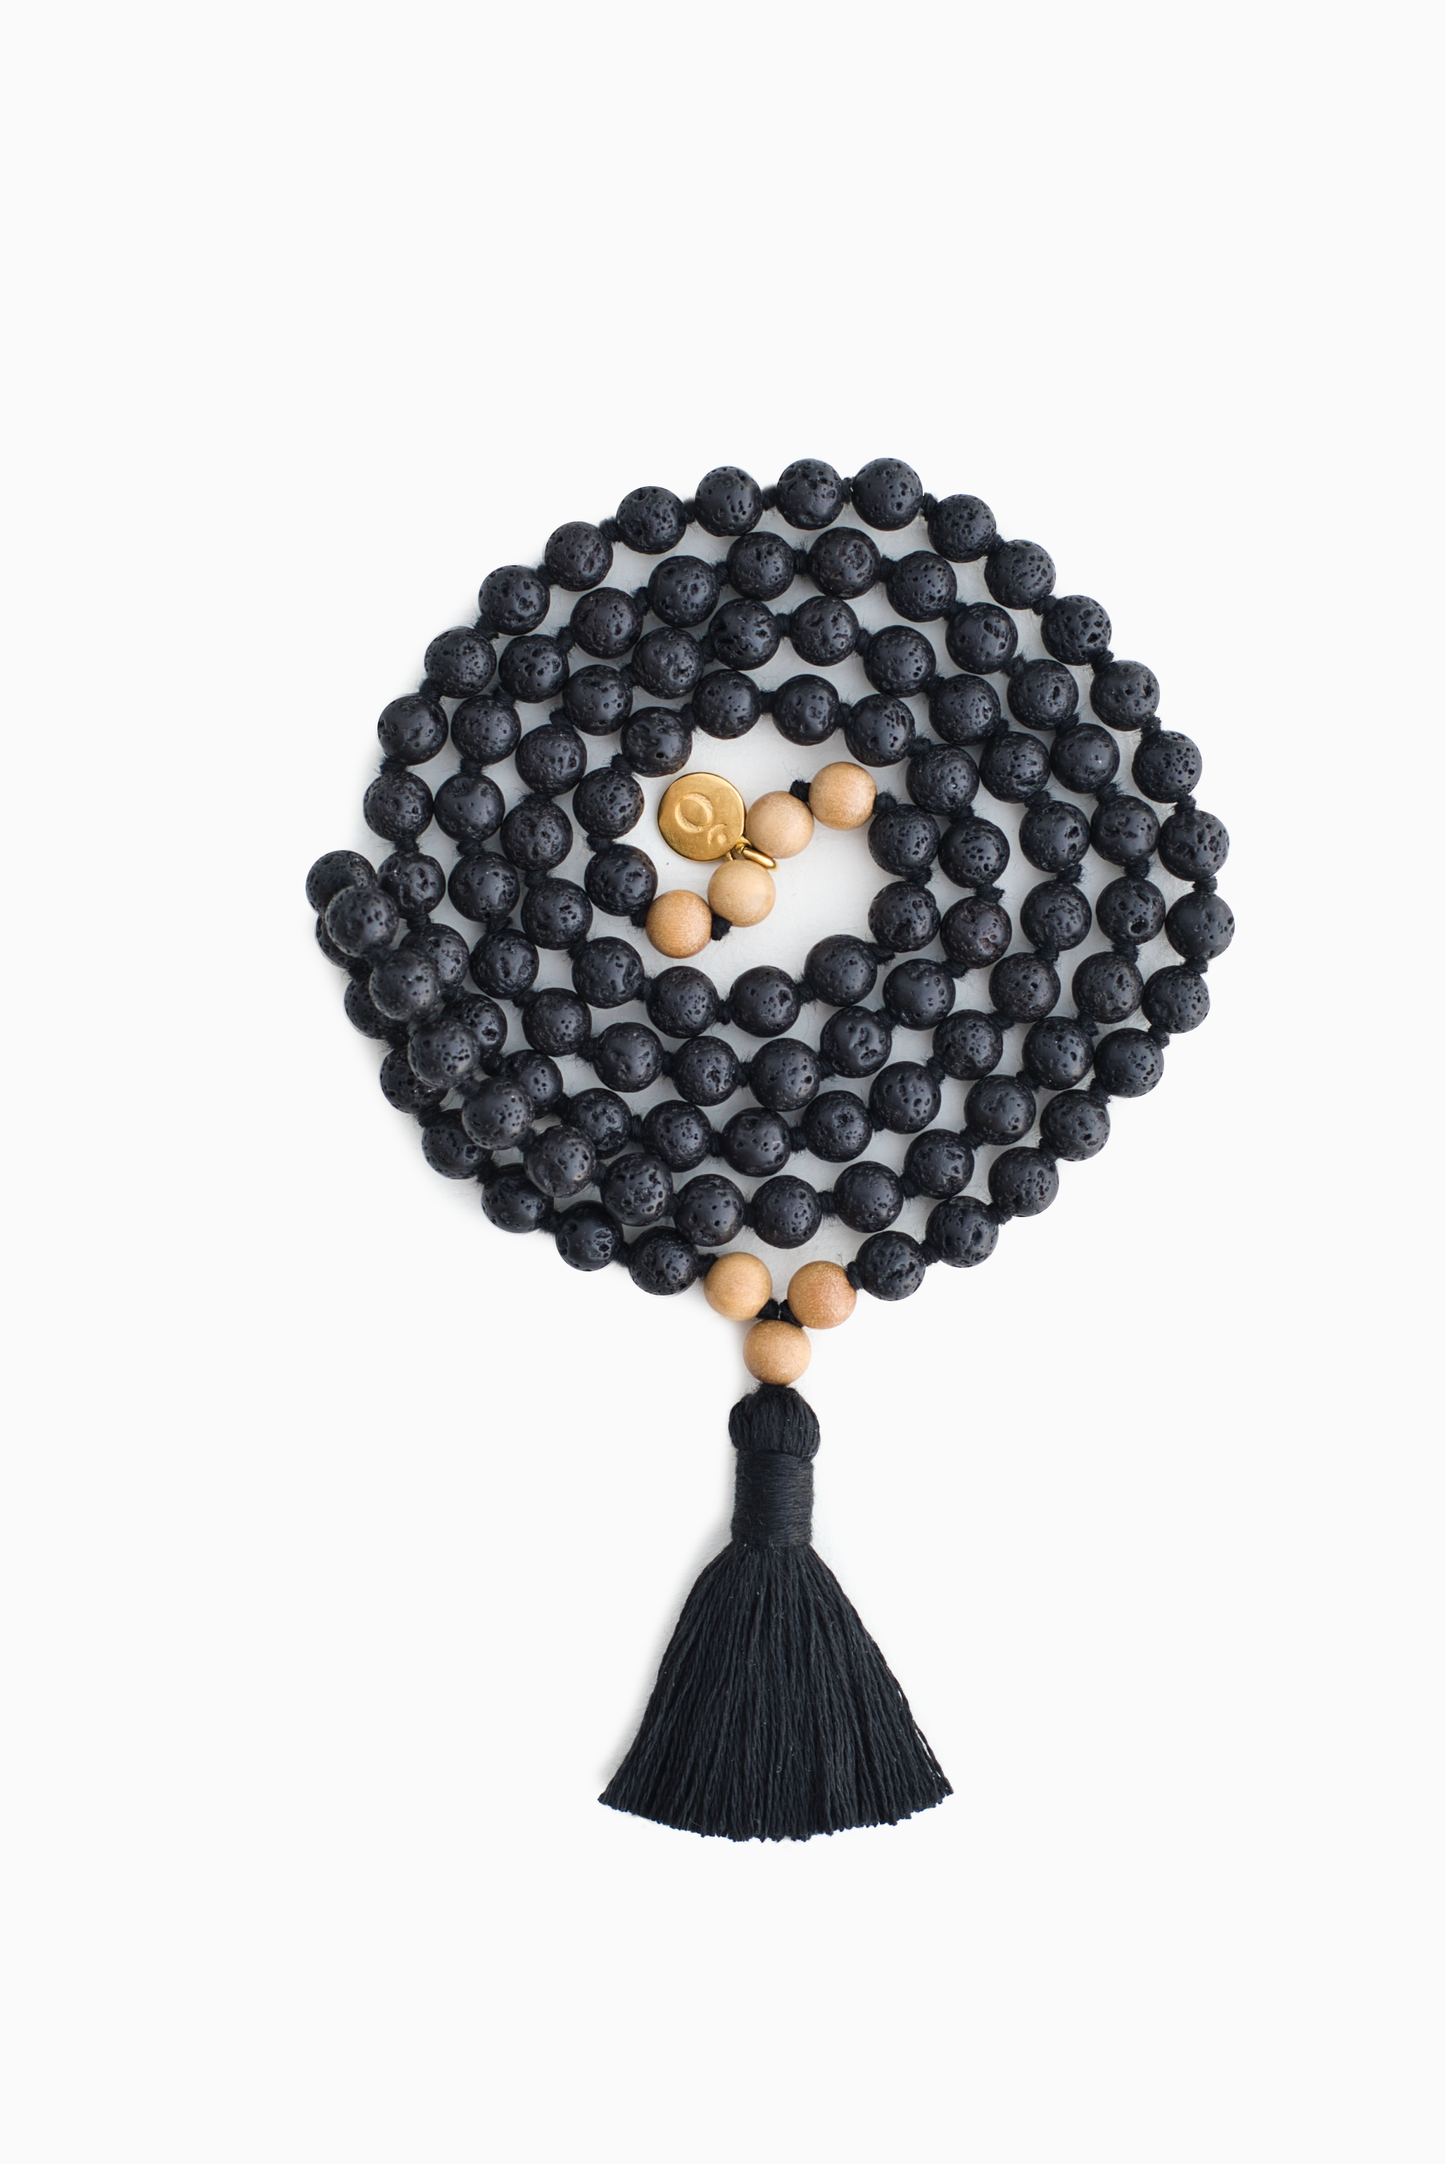 Earth Energy Malakette aus Lava schwarz mit 108 Perlen 